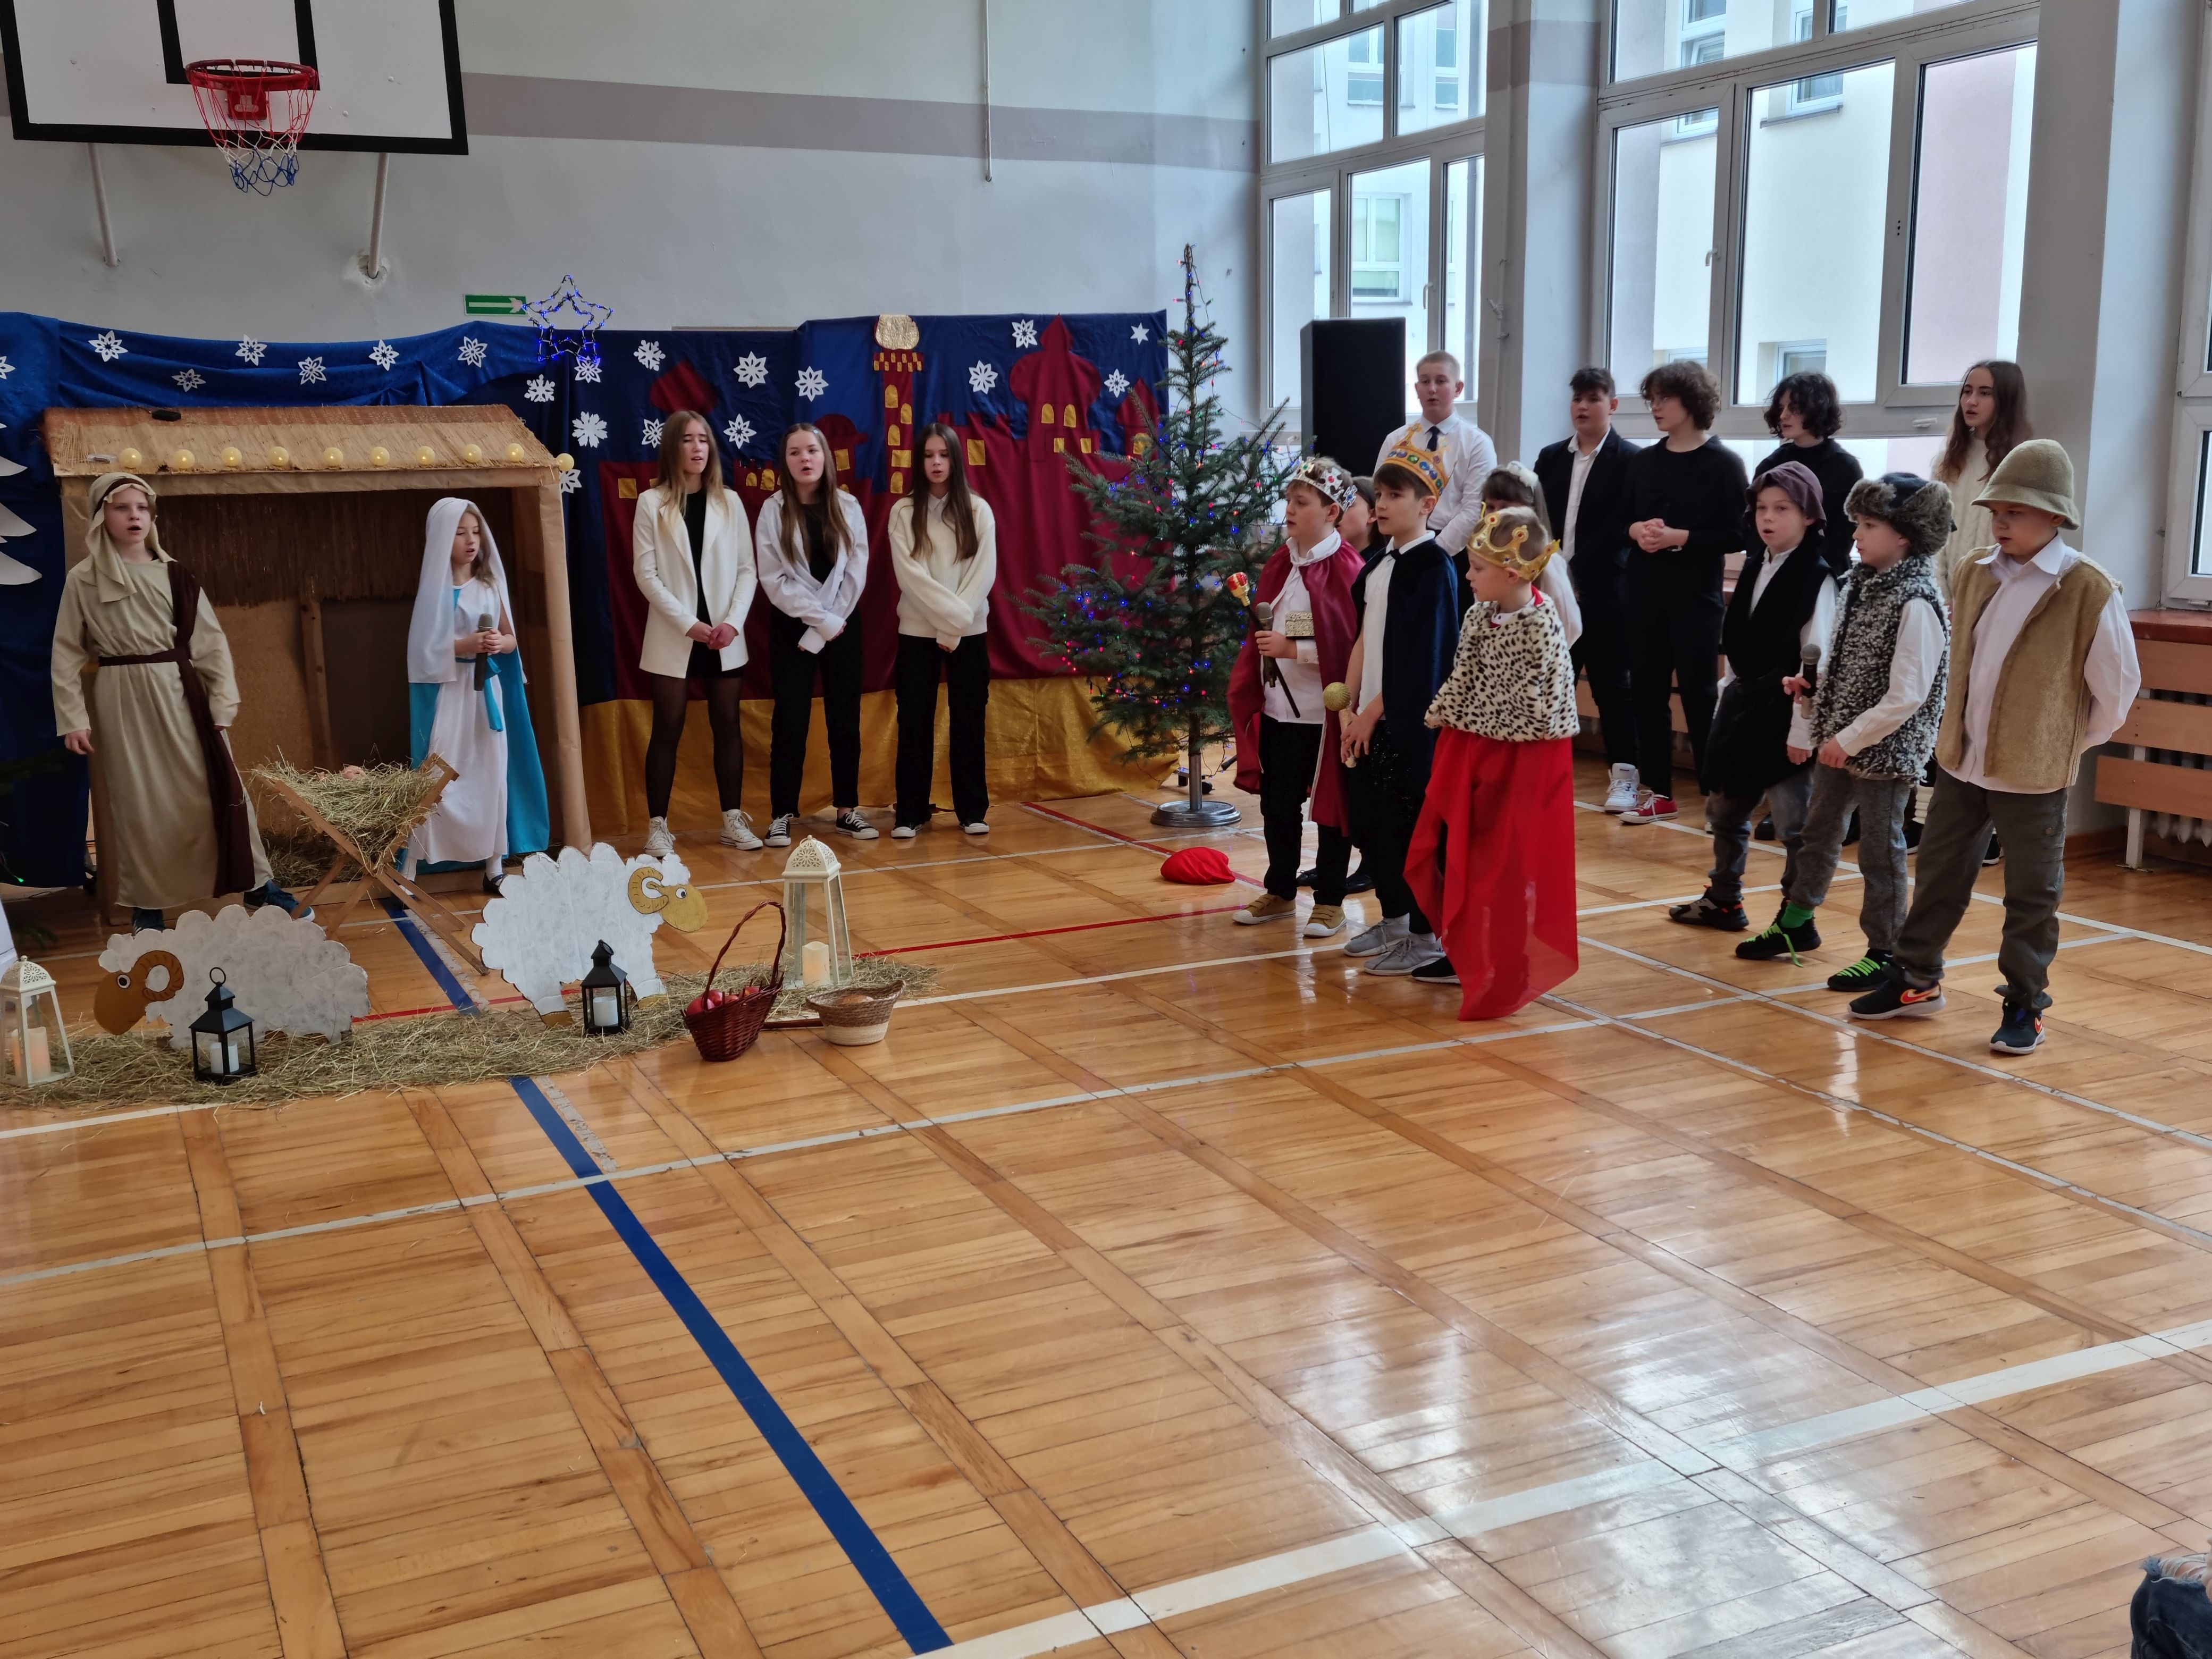 Uczniowie przebrani za Trzech Króli podczas przedstawienia jasełkowego